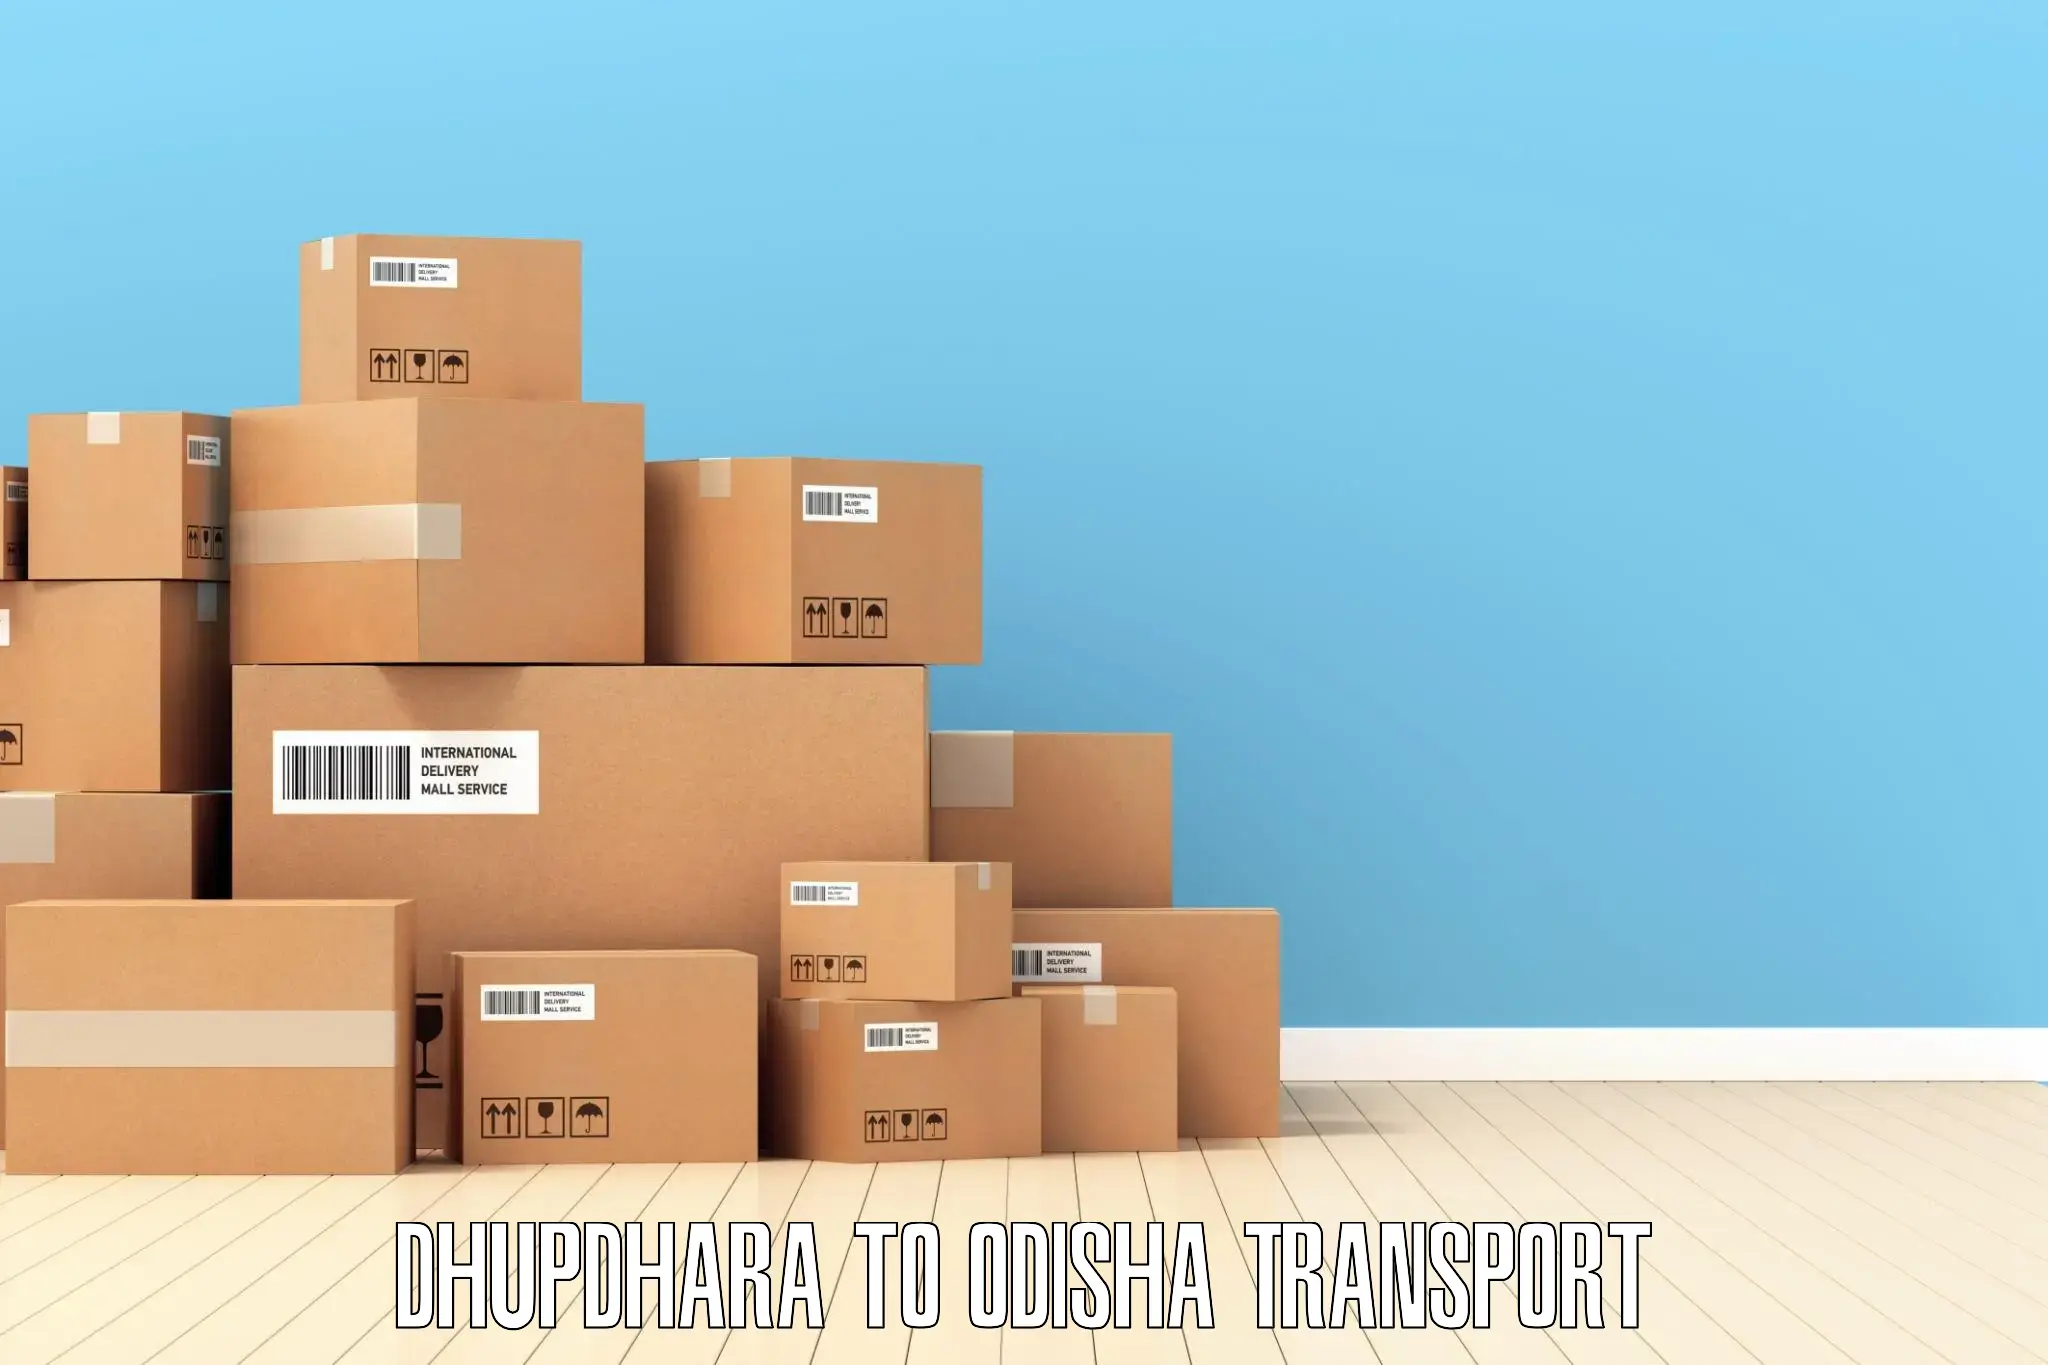 Air cargo transport services Dhupdhara to Kupari